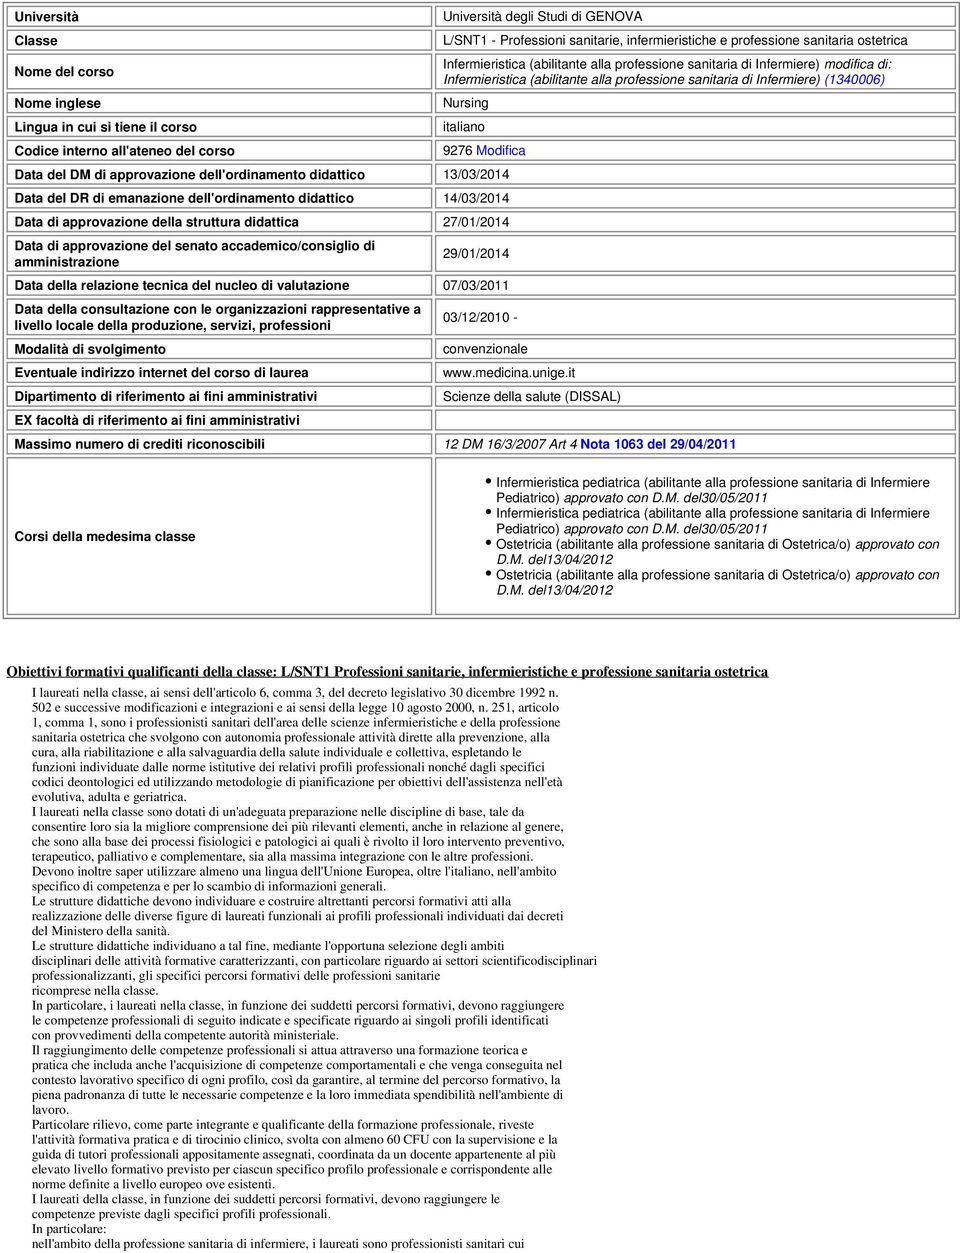 Nursing italiano 9276 Modifica Data del DM di approvazione dell'ordinamento didattico 13/03/2014 Data del DR di emanazione dell'ordinamento didattico 14/03/2014 Data di approvazione della struttura